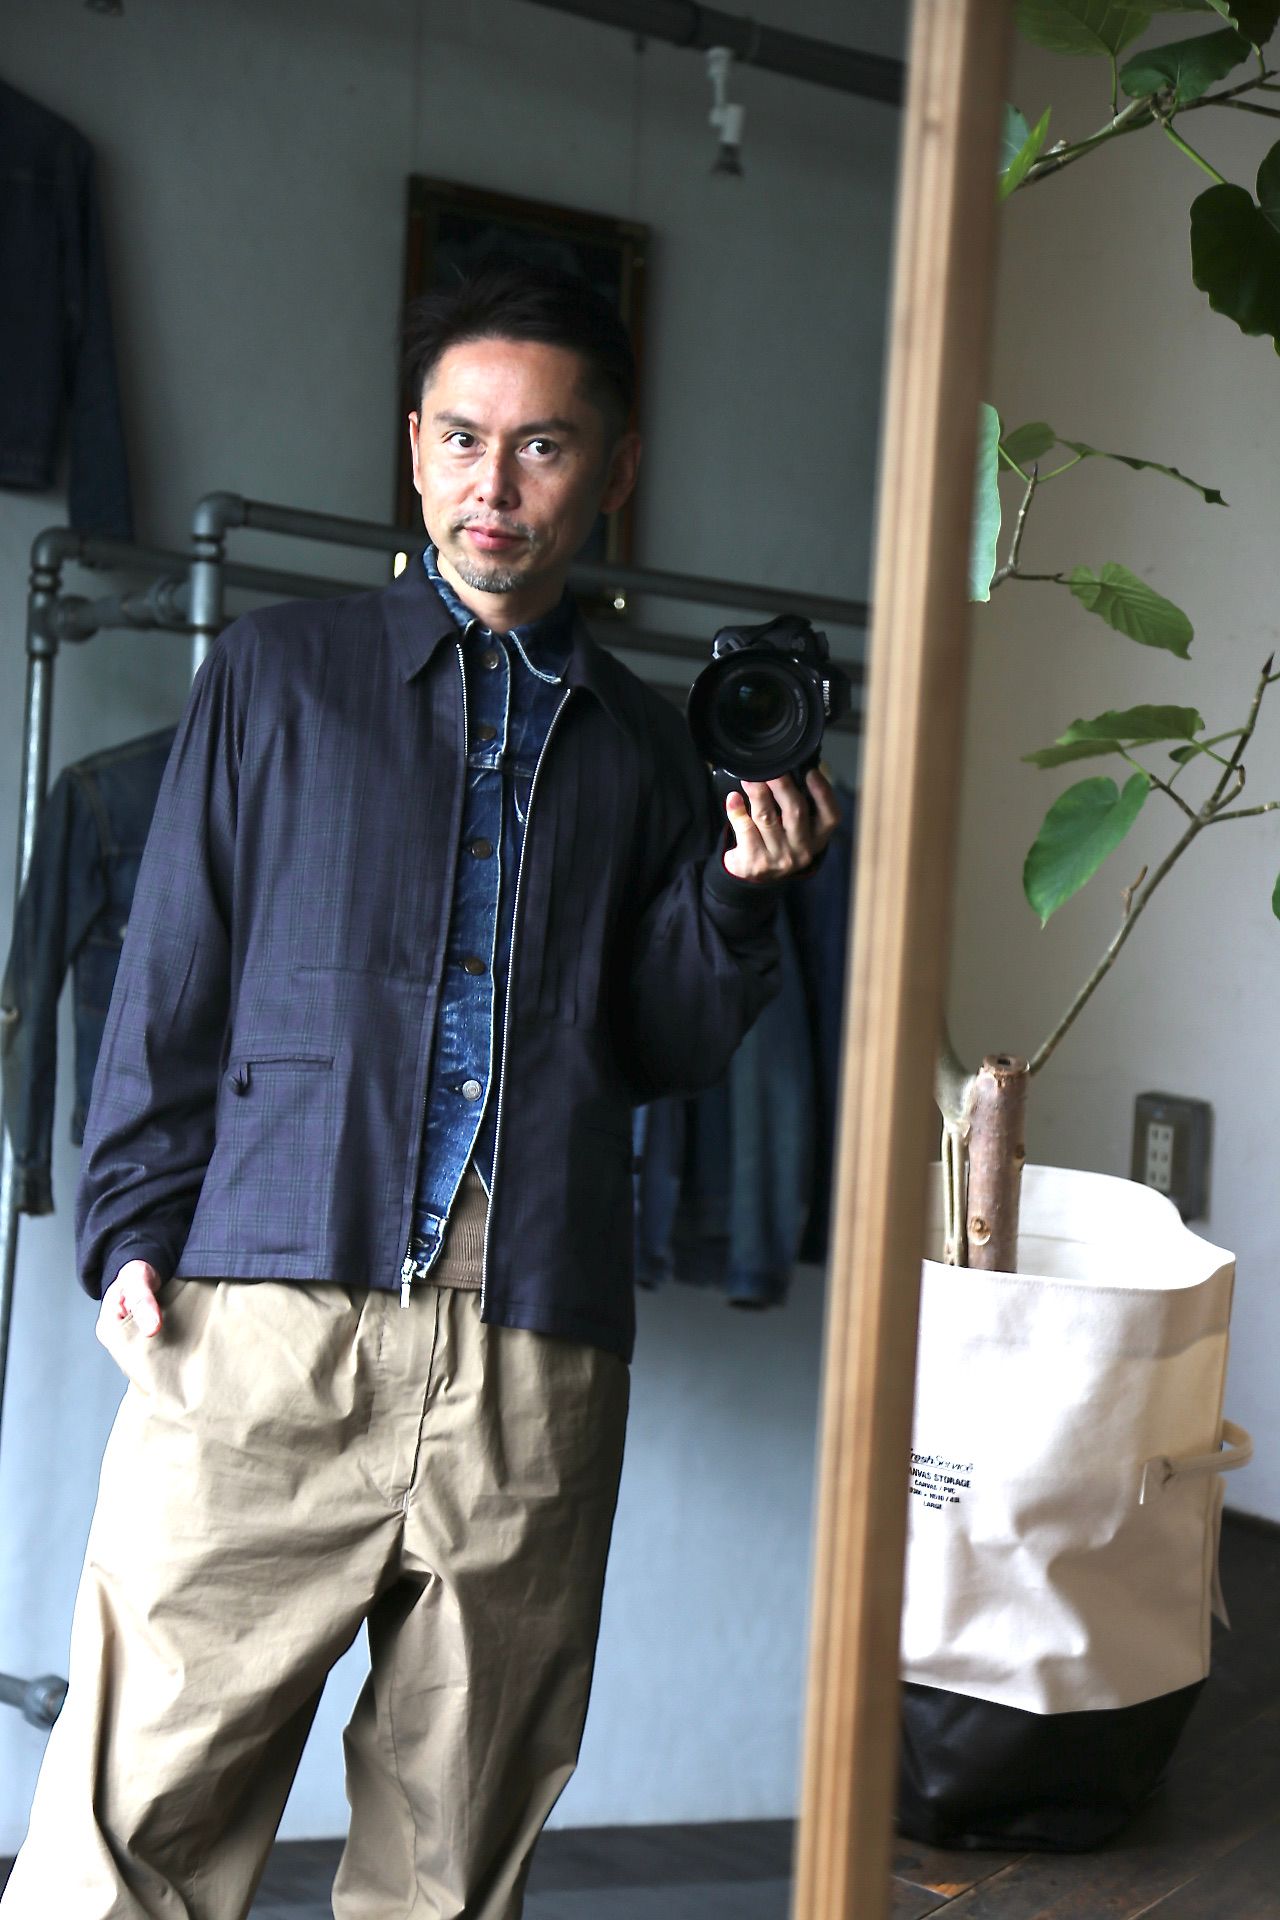 MATSUFUJI Flannel Check Pleats Jacket style.2021.7.6. | 1788 | mark